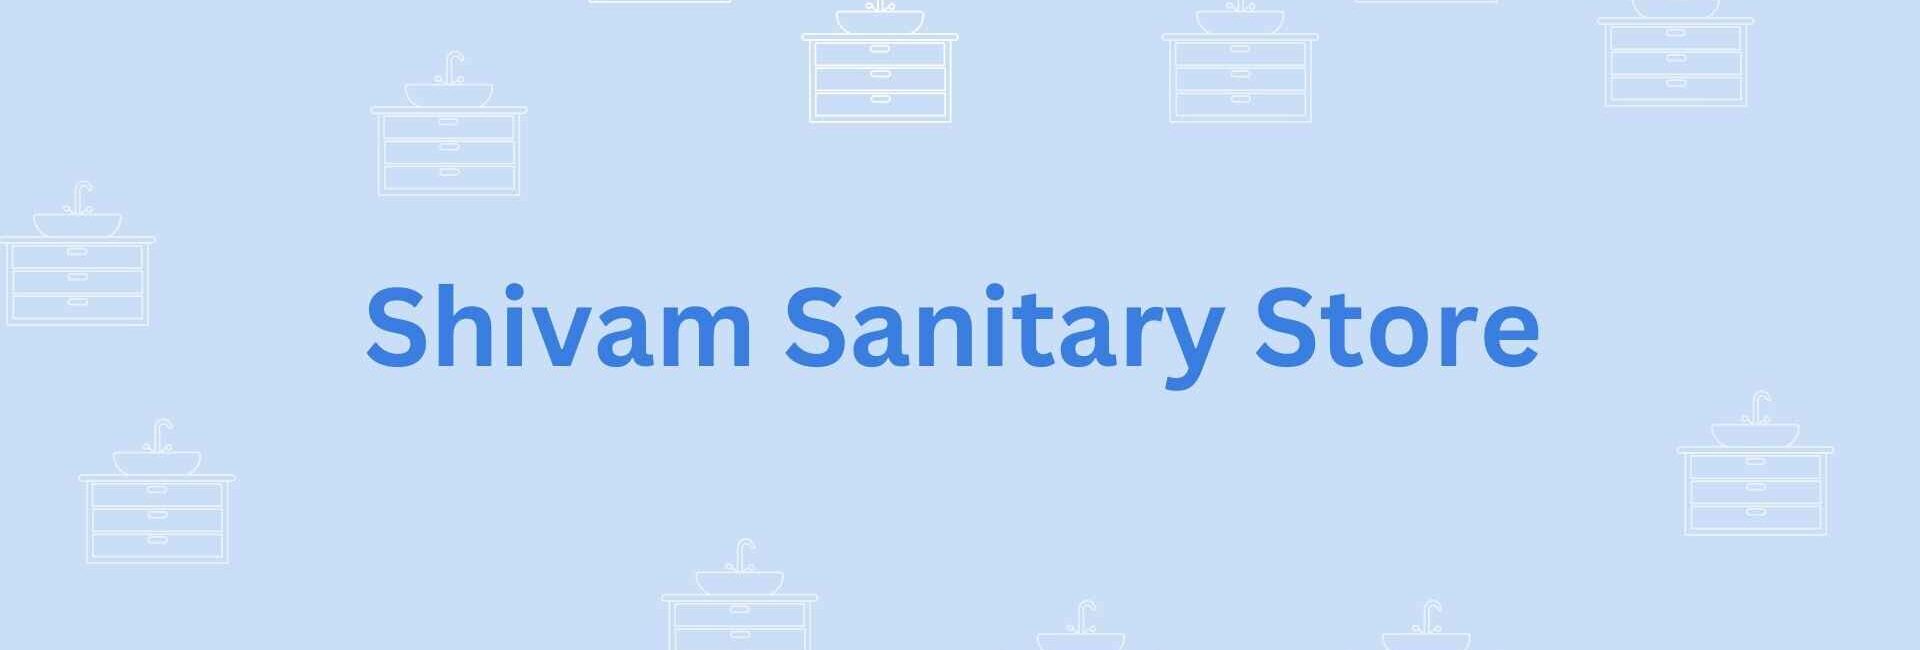 Shivam Sanitary Store- sanitary needs in Noida